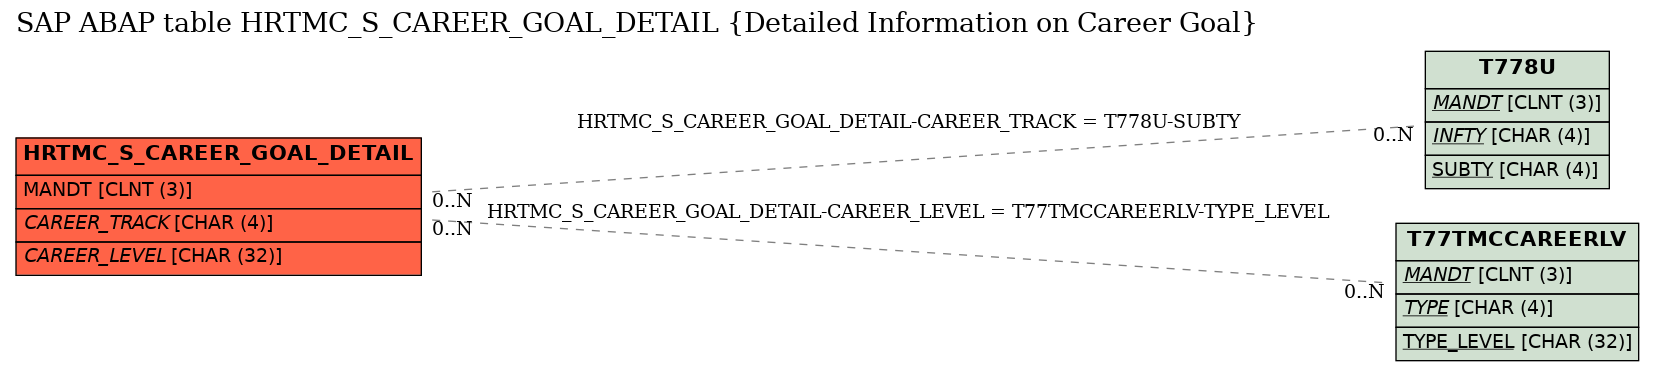 E-R Diagram for table HRTMC_S_CAREER_GOAL_DETAIL (Detailed Information on Career Goal)